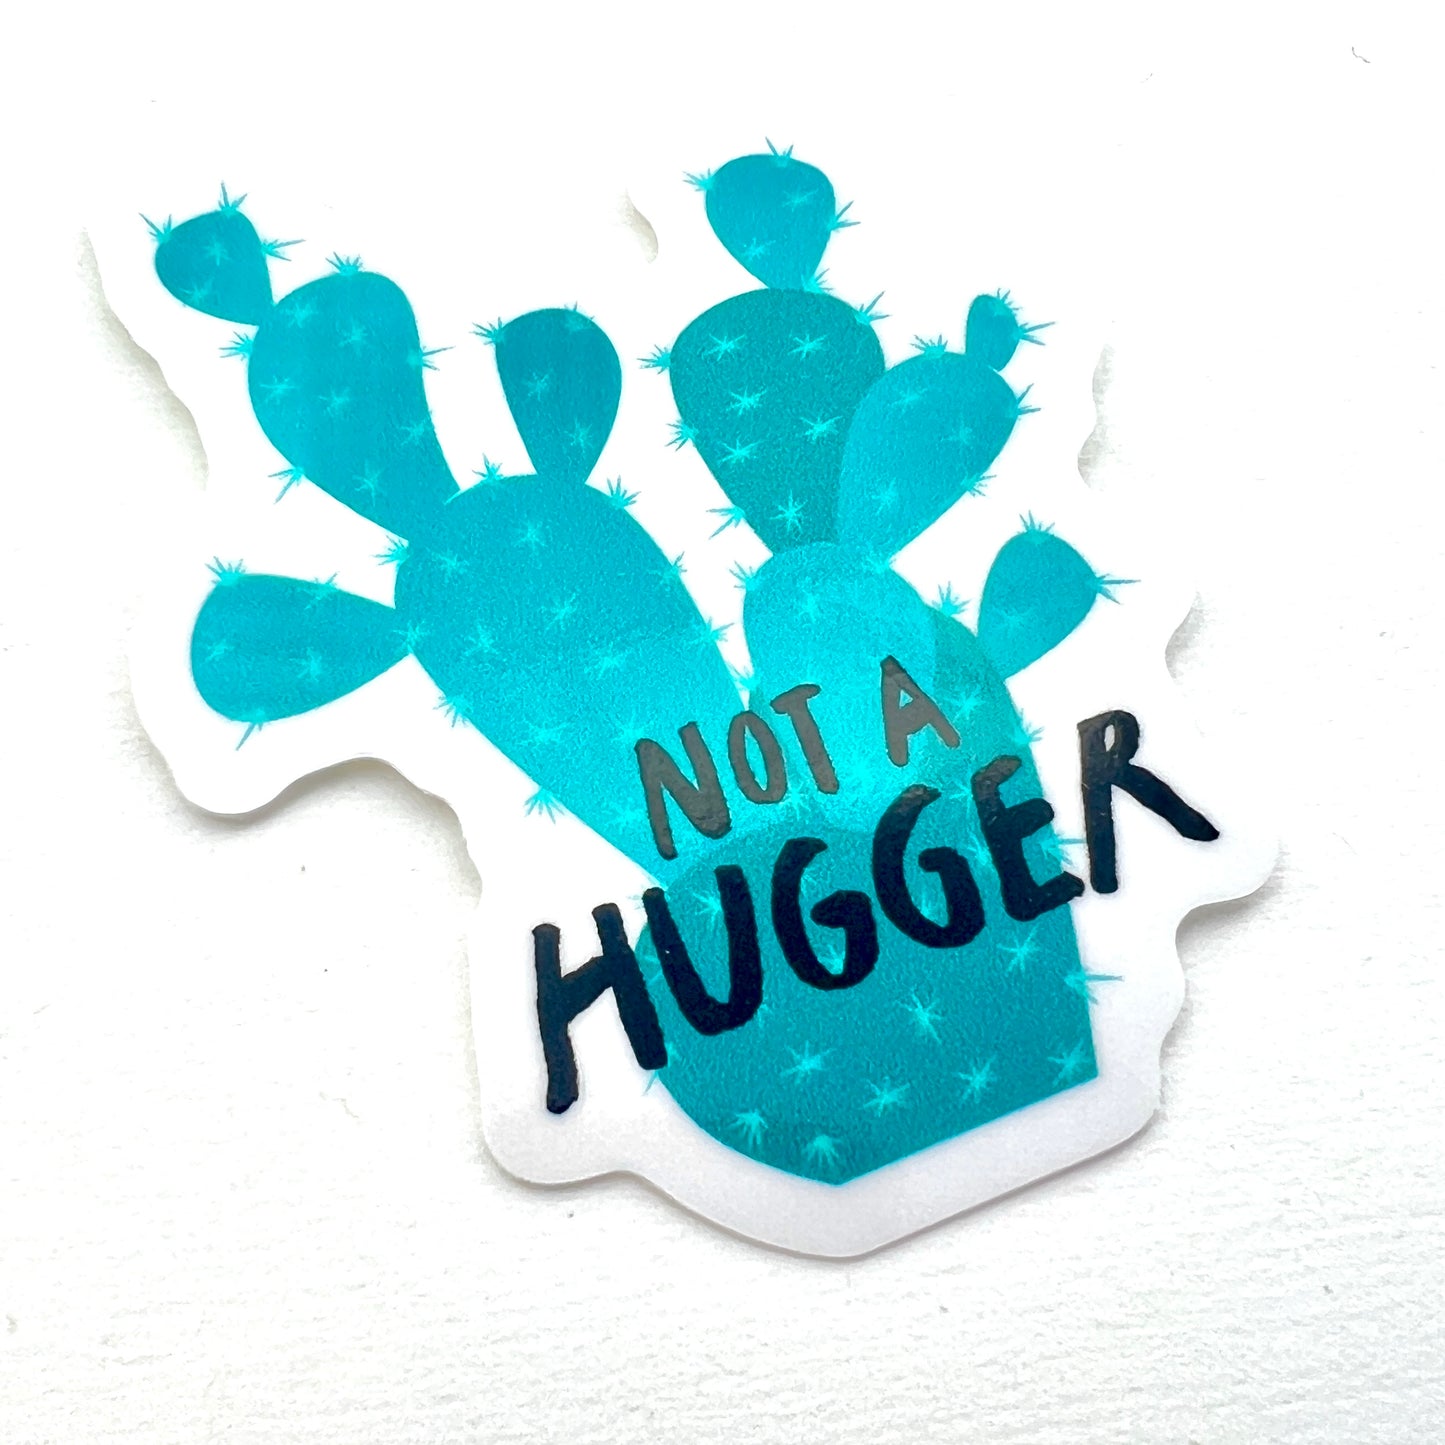 Not a Hugger vinyl sticker